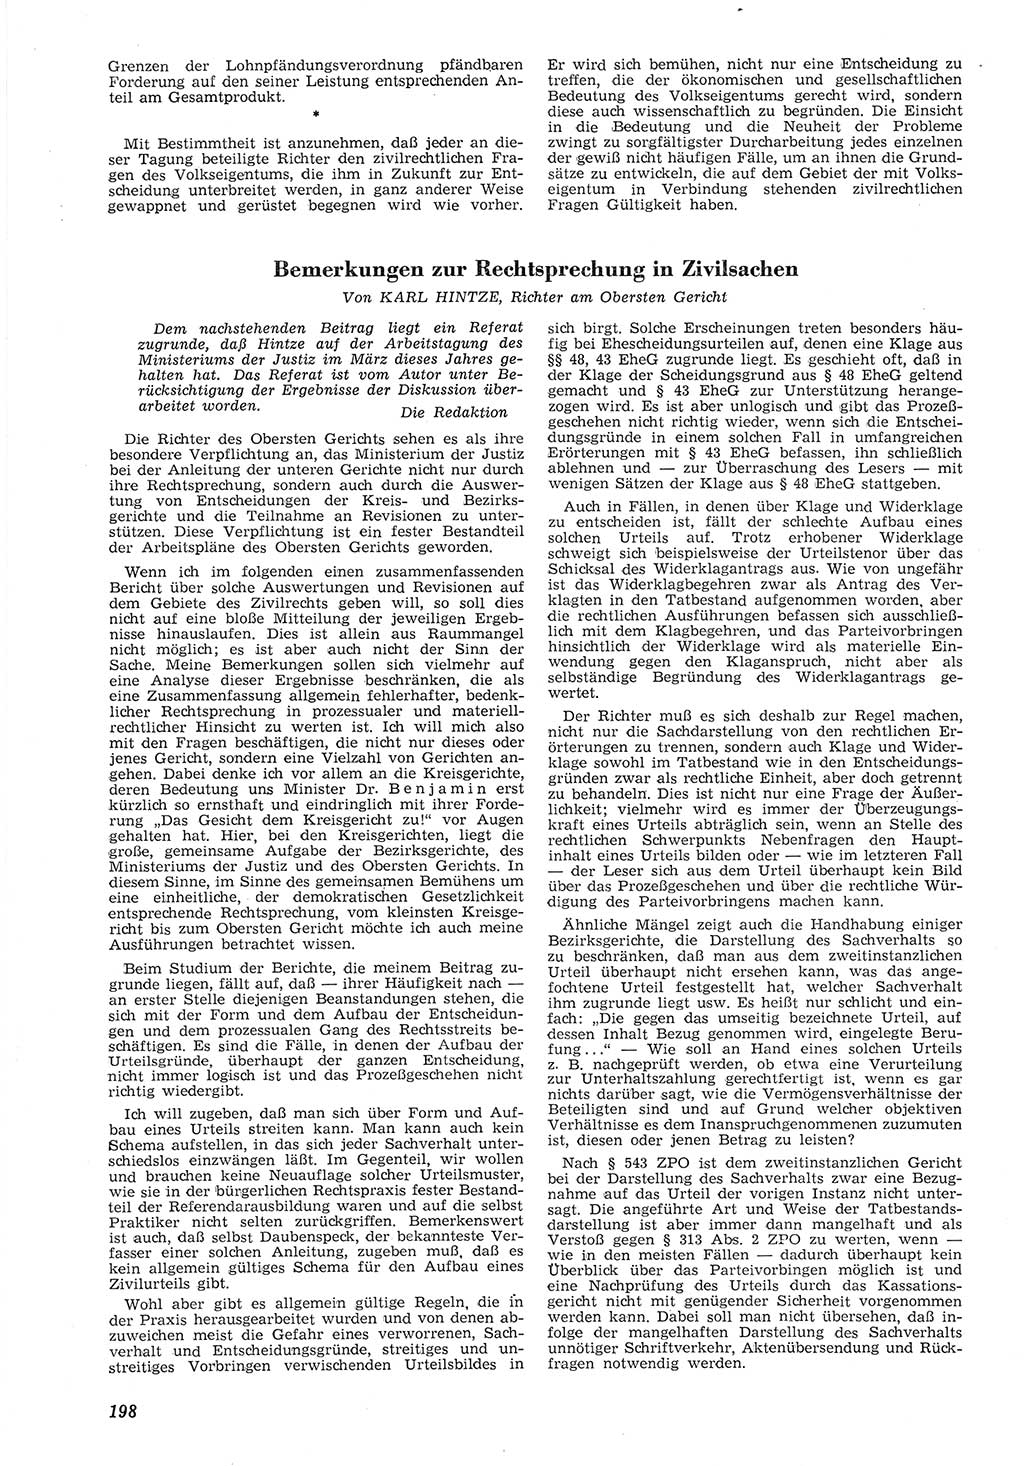 Neue Justiz (NJ), Zeitschrift für Recht und Rechtswissenschaft [Deutsche Demokratische Republik (DDR)], 8. Jahrgang 1954, Seite 198 (NJ DDR 1954, S. 198)